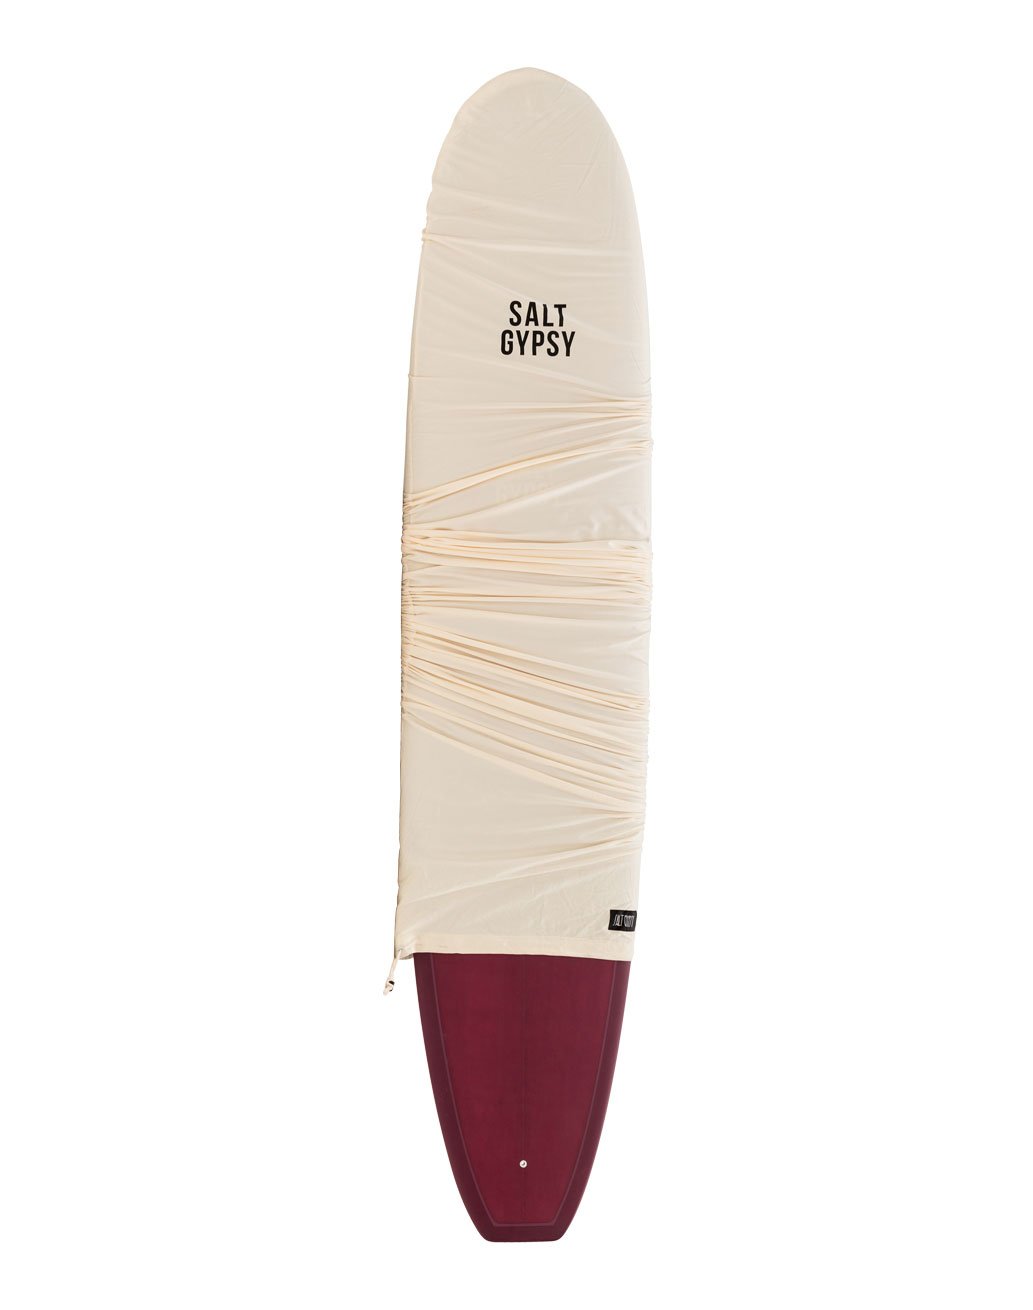 Salt Gypsy - Dusty - merlot coloured longboard